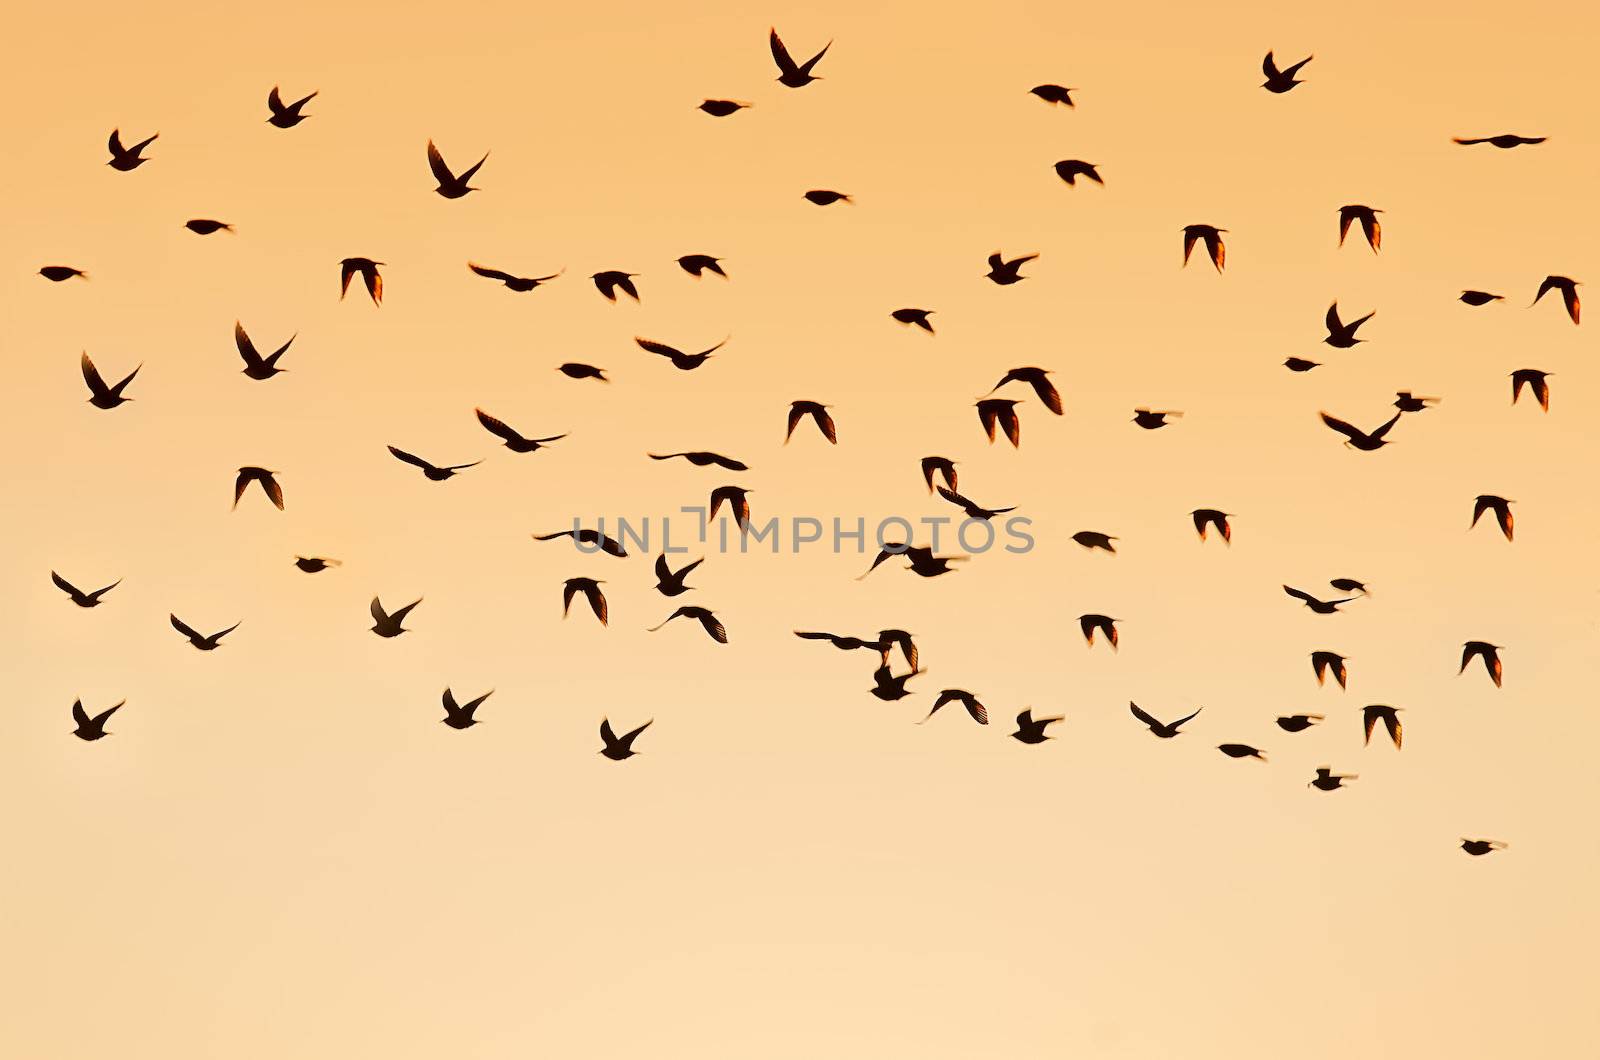 Birds flying by gufoto